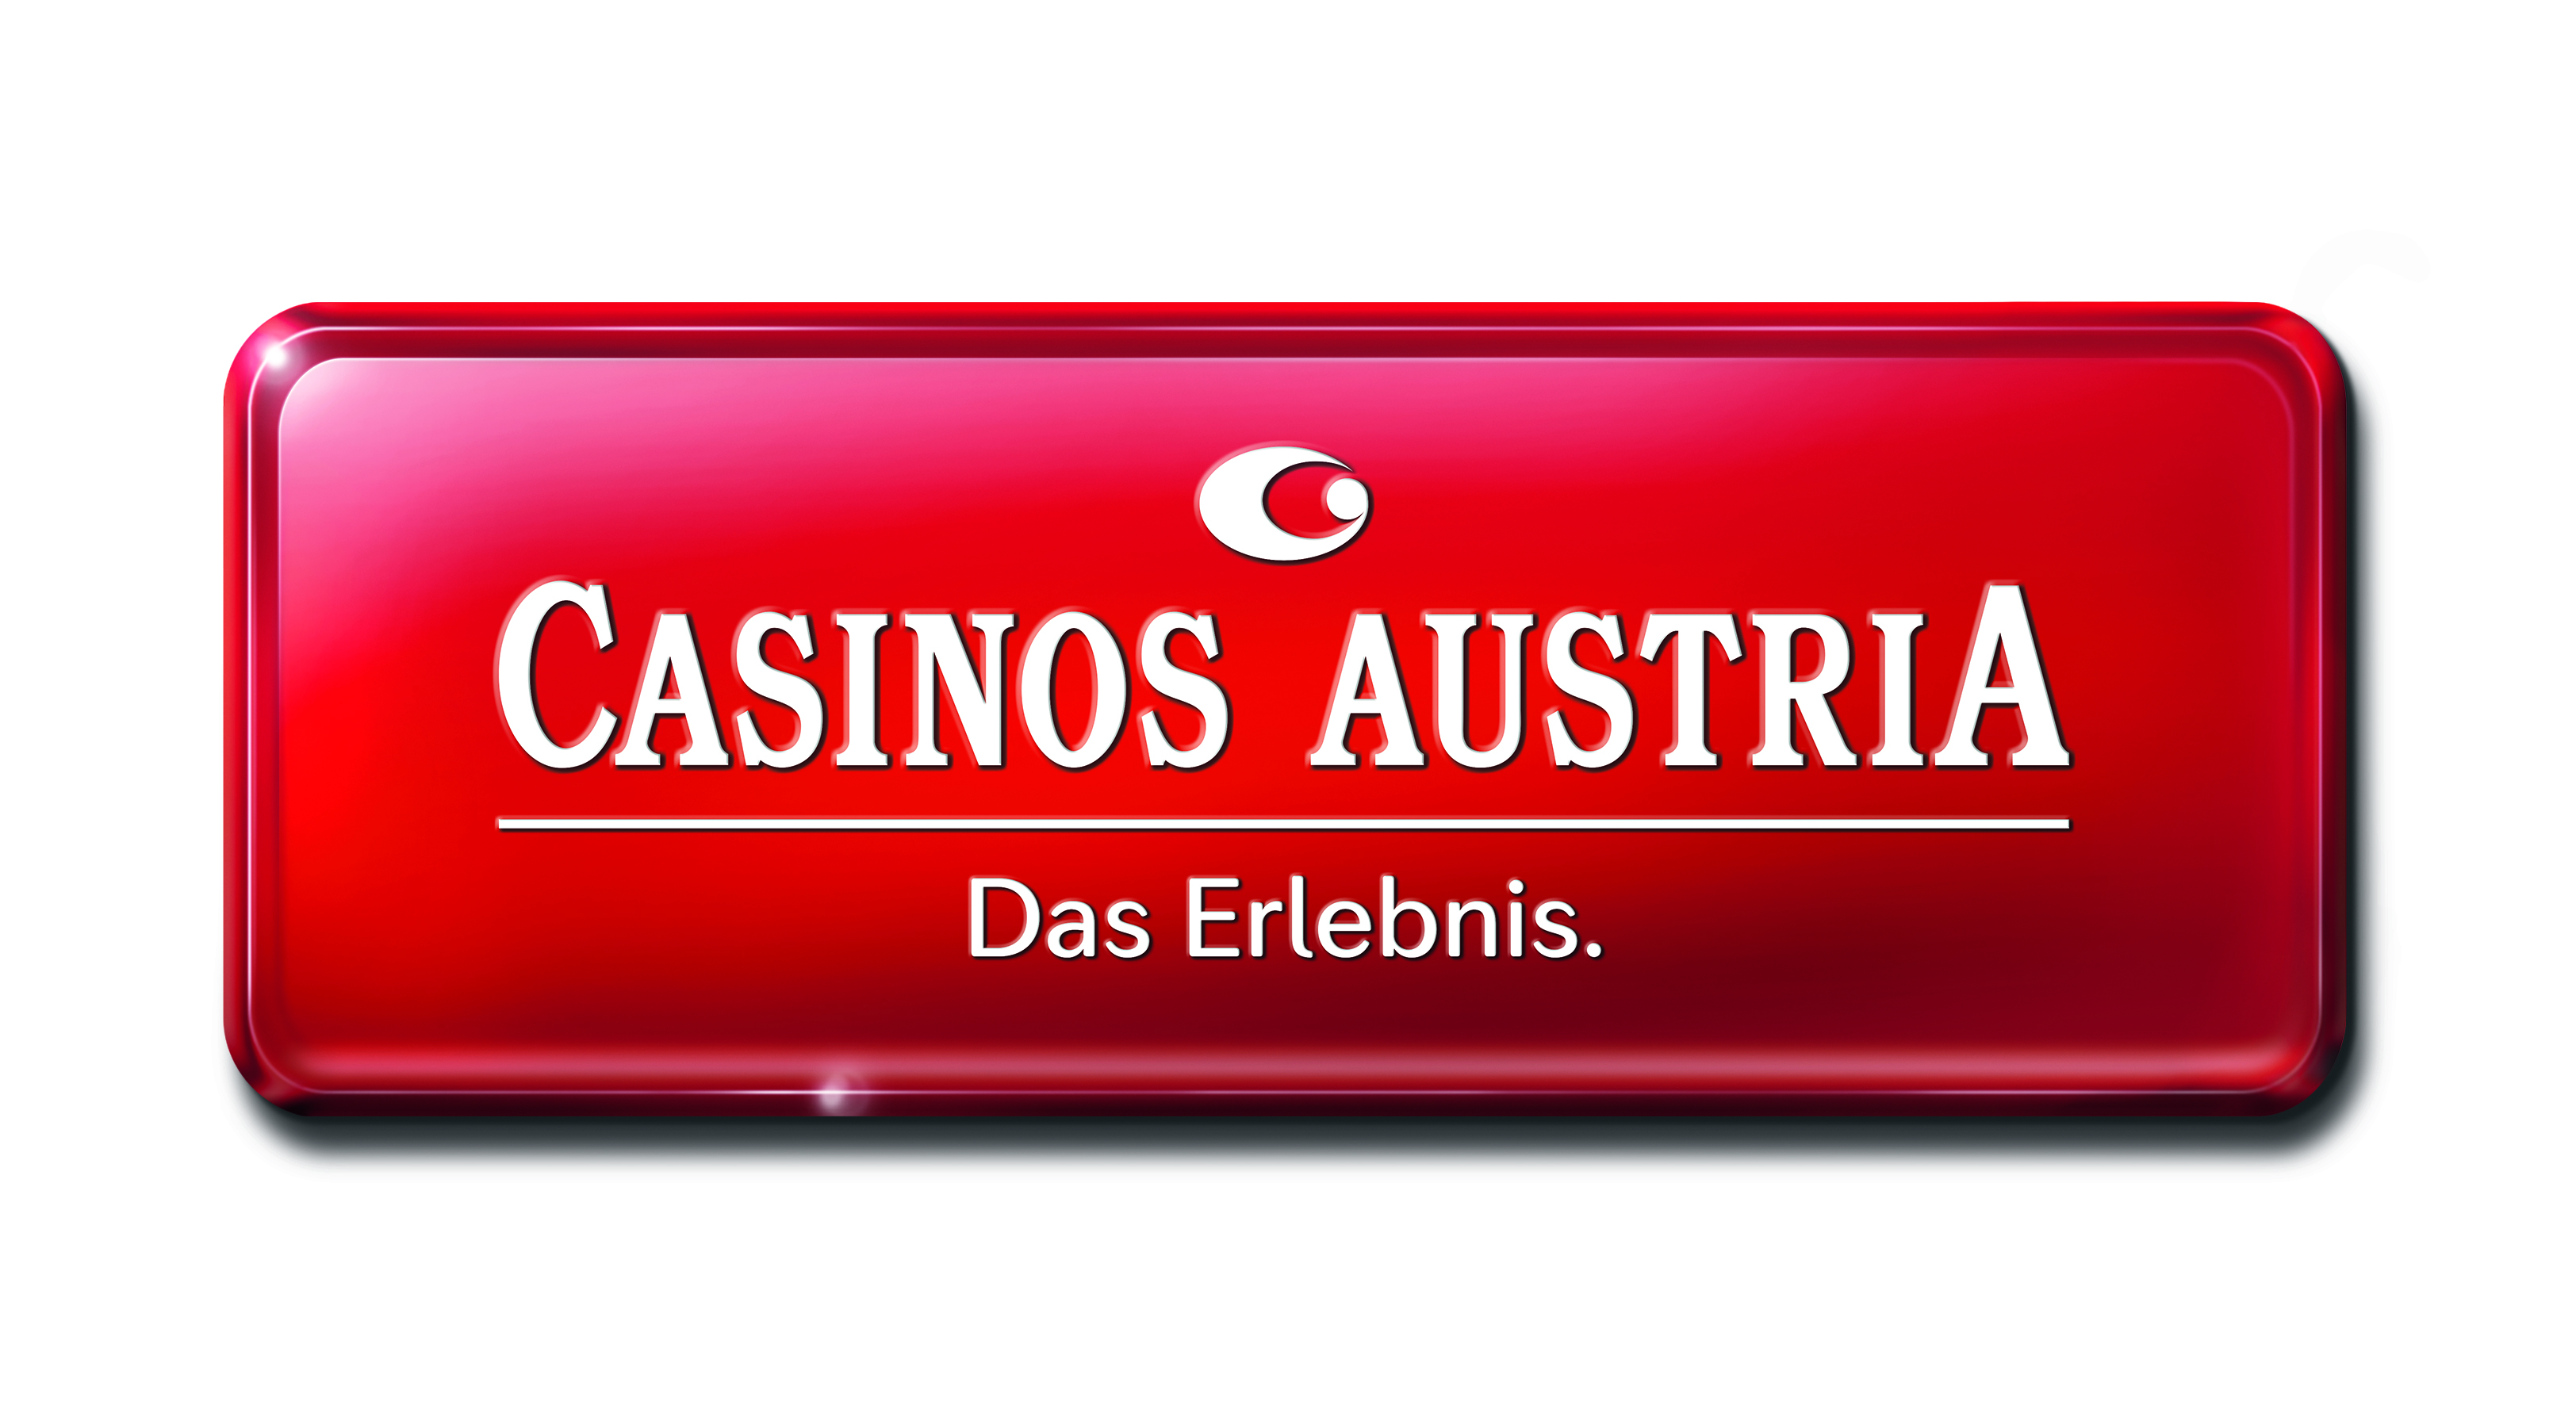 Casinos Austria Geschichte